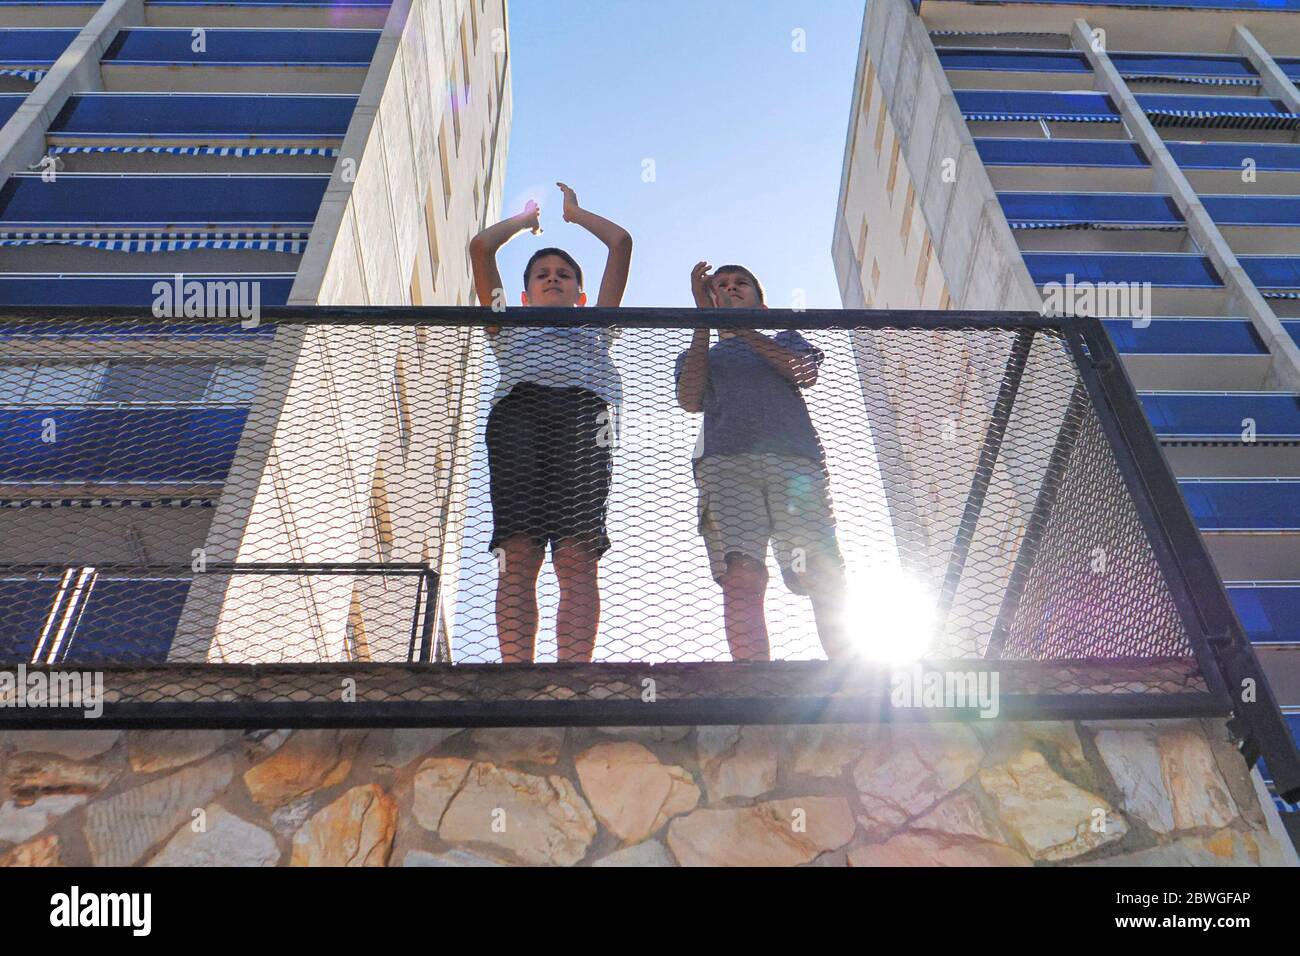 Kinder klatschen mit den Händen, applaudieren vom Balkon der Terrasse, um Ärzte, Krankenschwestern, Krankenhausangestellte während der Coronavirus Covid-19 Pandemie Quarantäne zu unterstützen Stockfoto